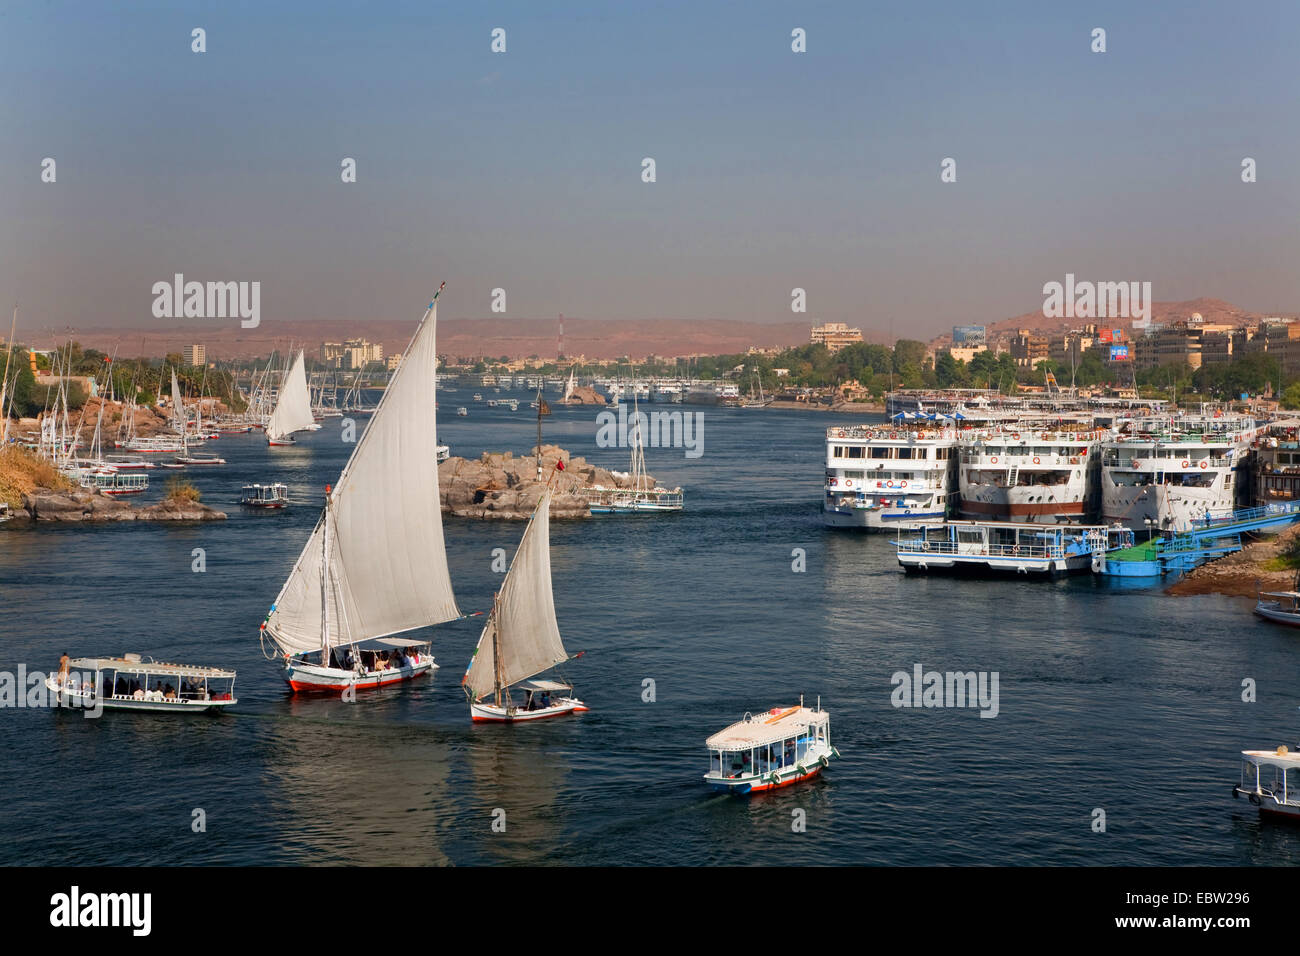 Vista desde el jardín Ferial a Nilo con feluchos y cruceros fluviales, Egipto, Assuan Foto de stock